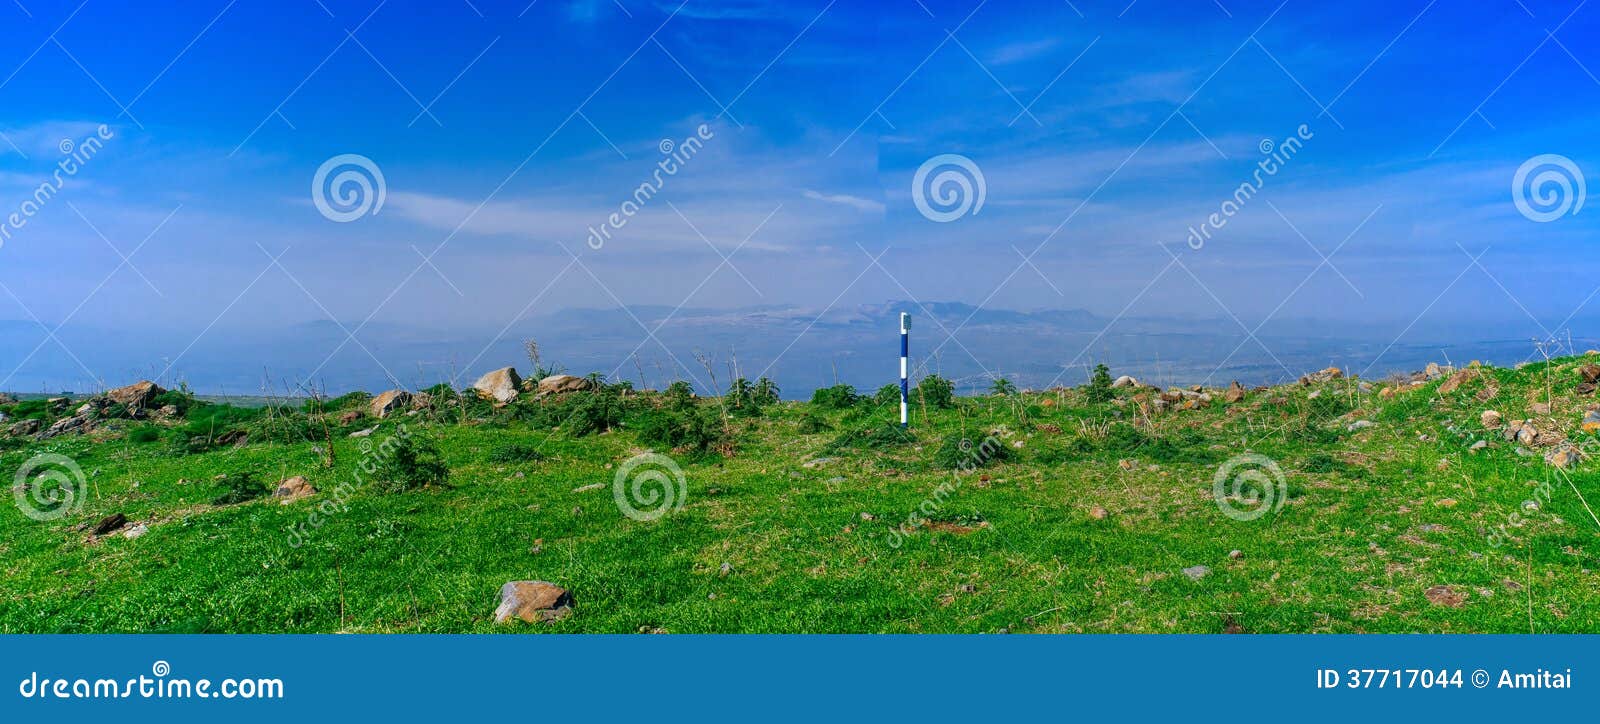 holy land series - golan heights panorama